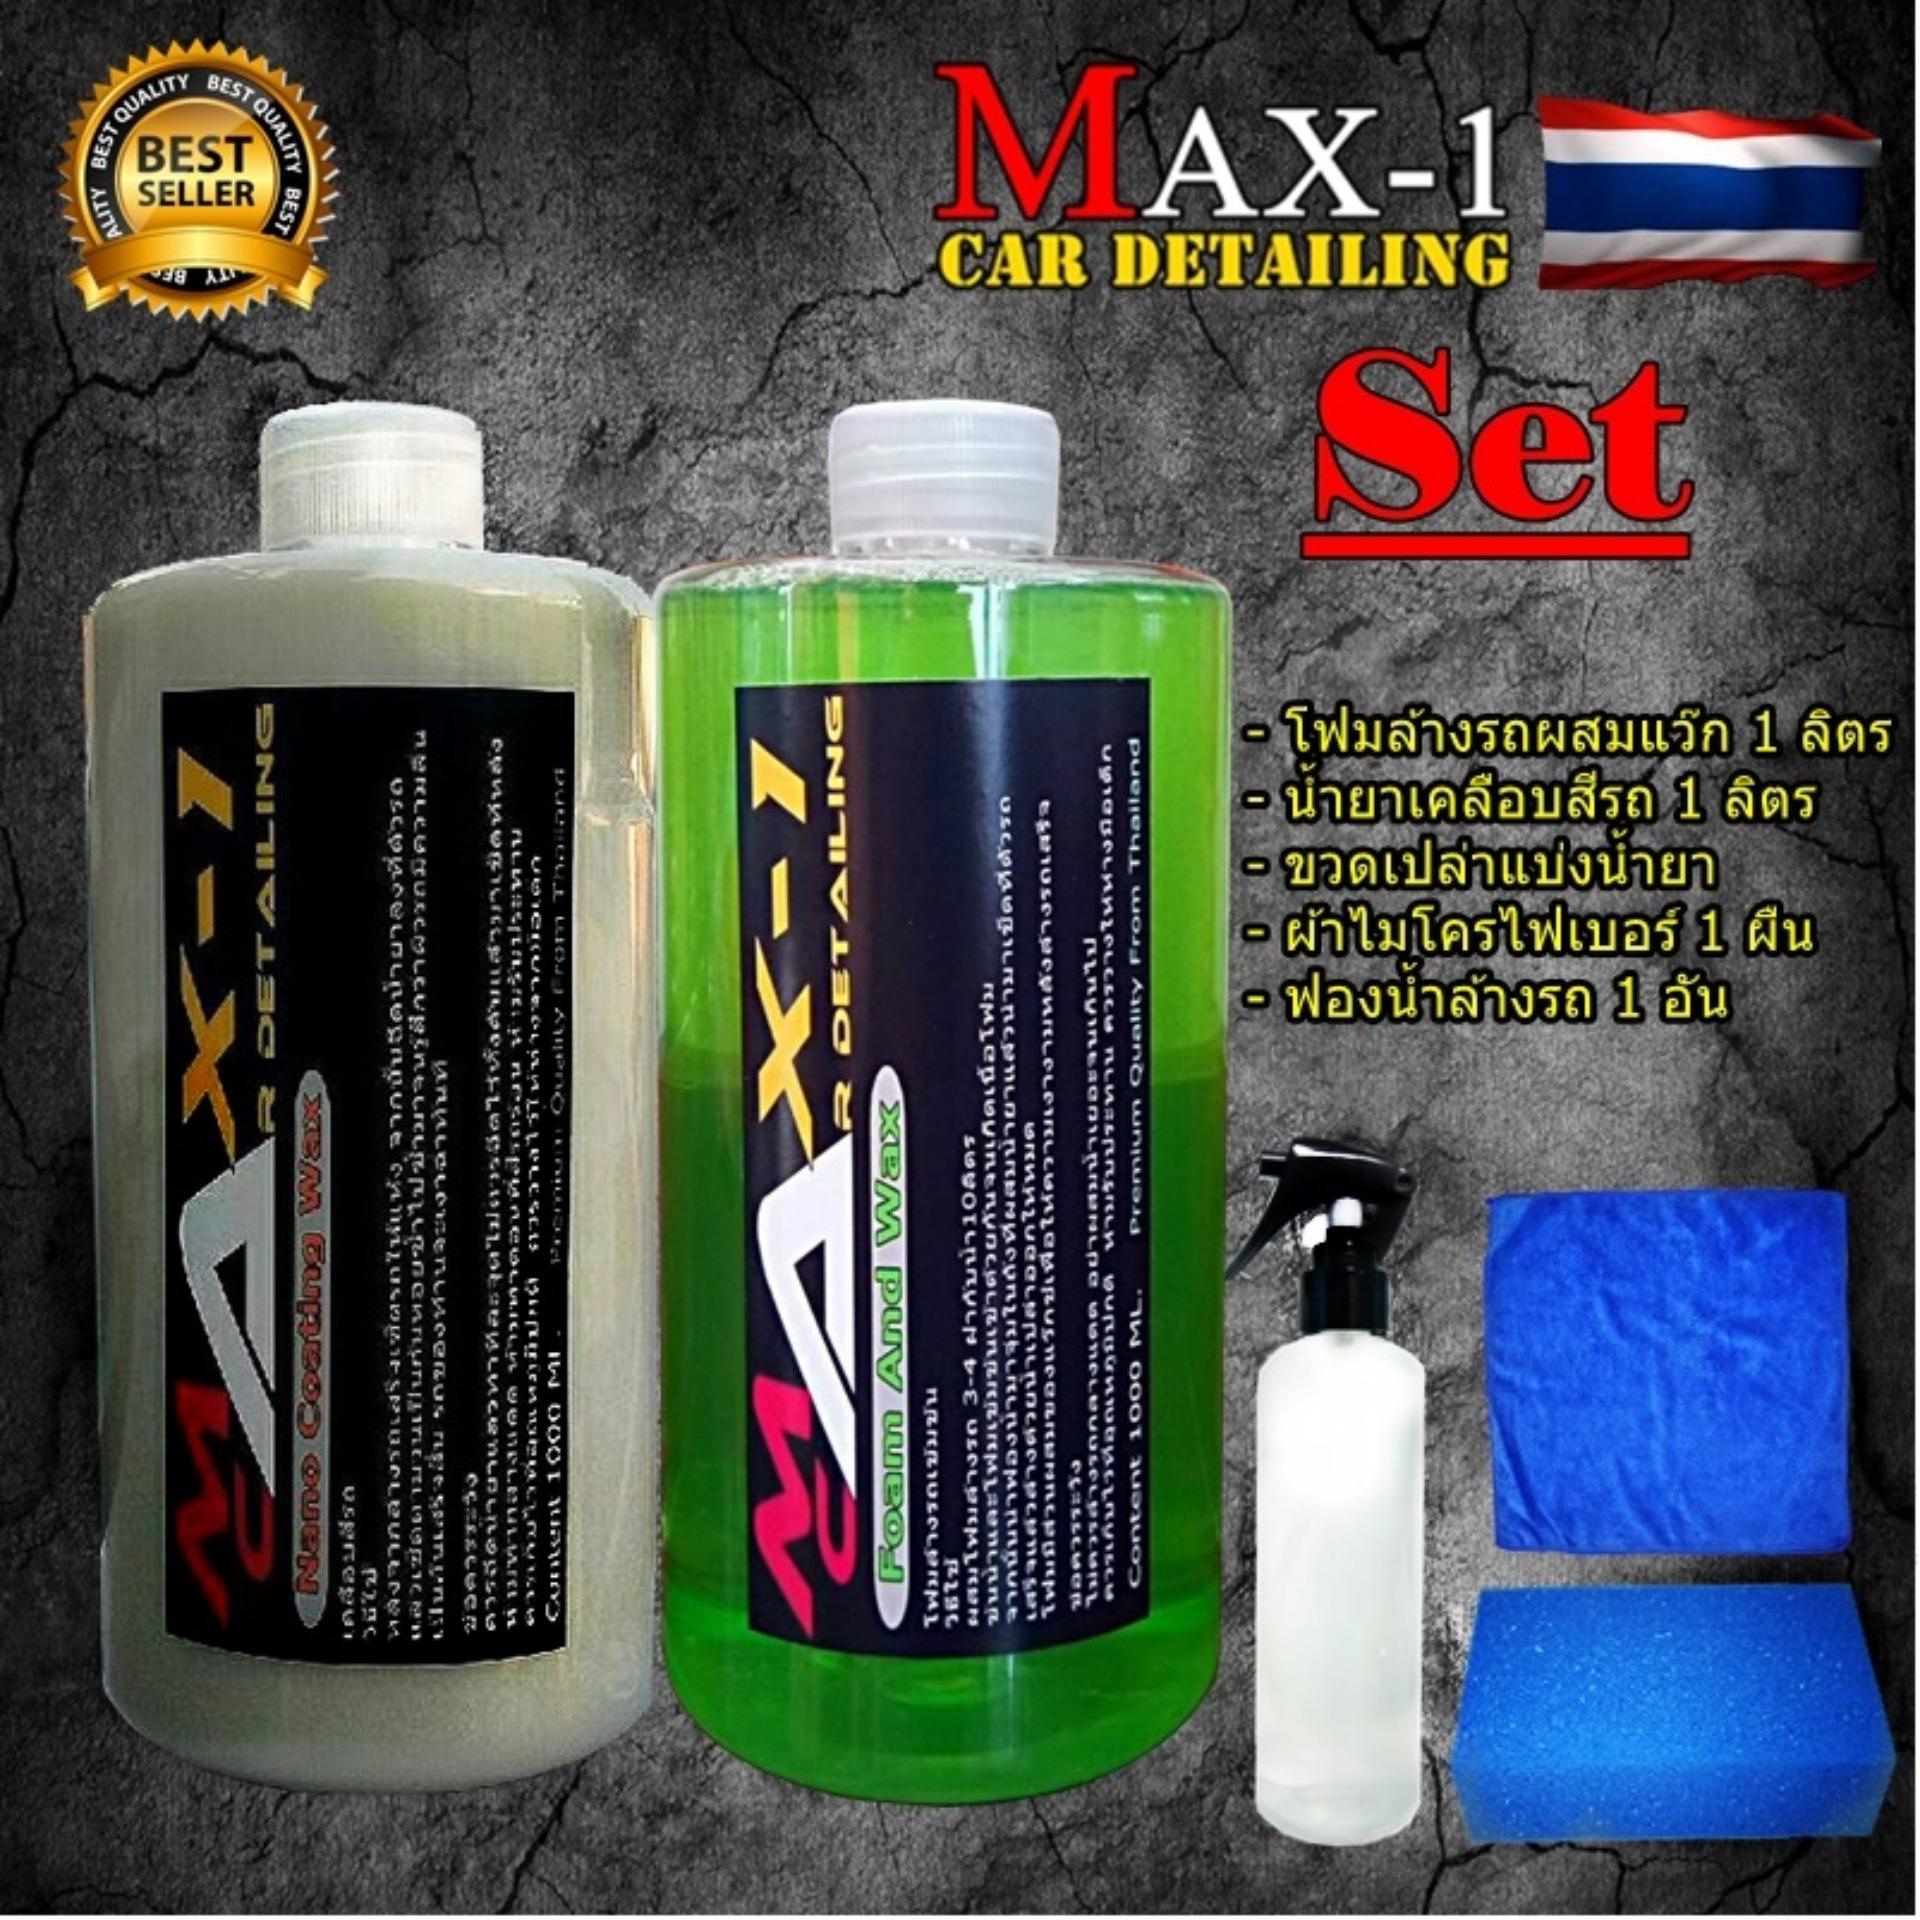 Max-1 โฟมล้างรถผสมWax 1000 ml + เคลือบสีรถ Nano Coating 1000ml + ขวดเปล่าใส่น้ำยา  ผ้า 1 ฟองน้ำ 1